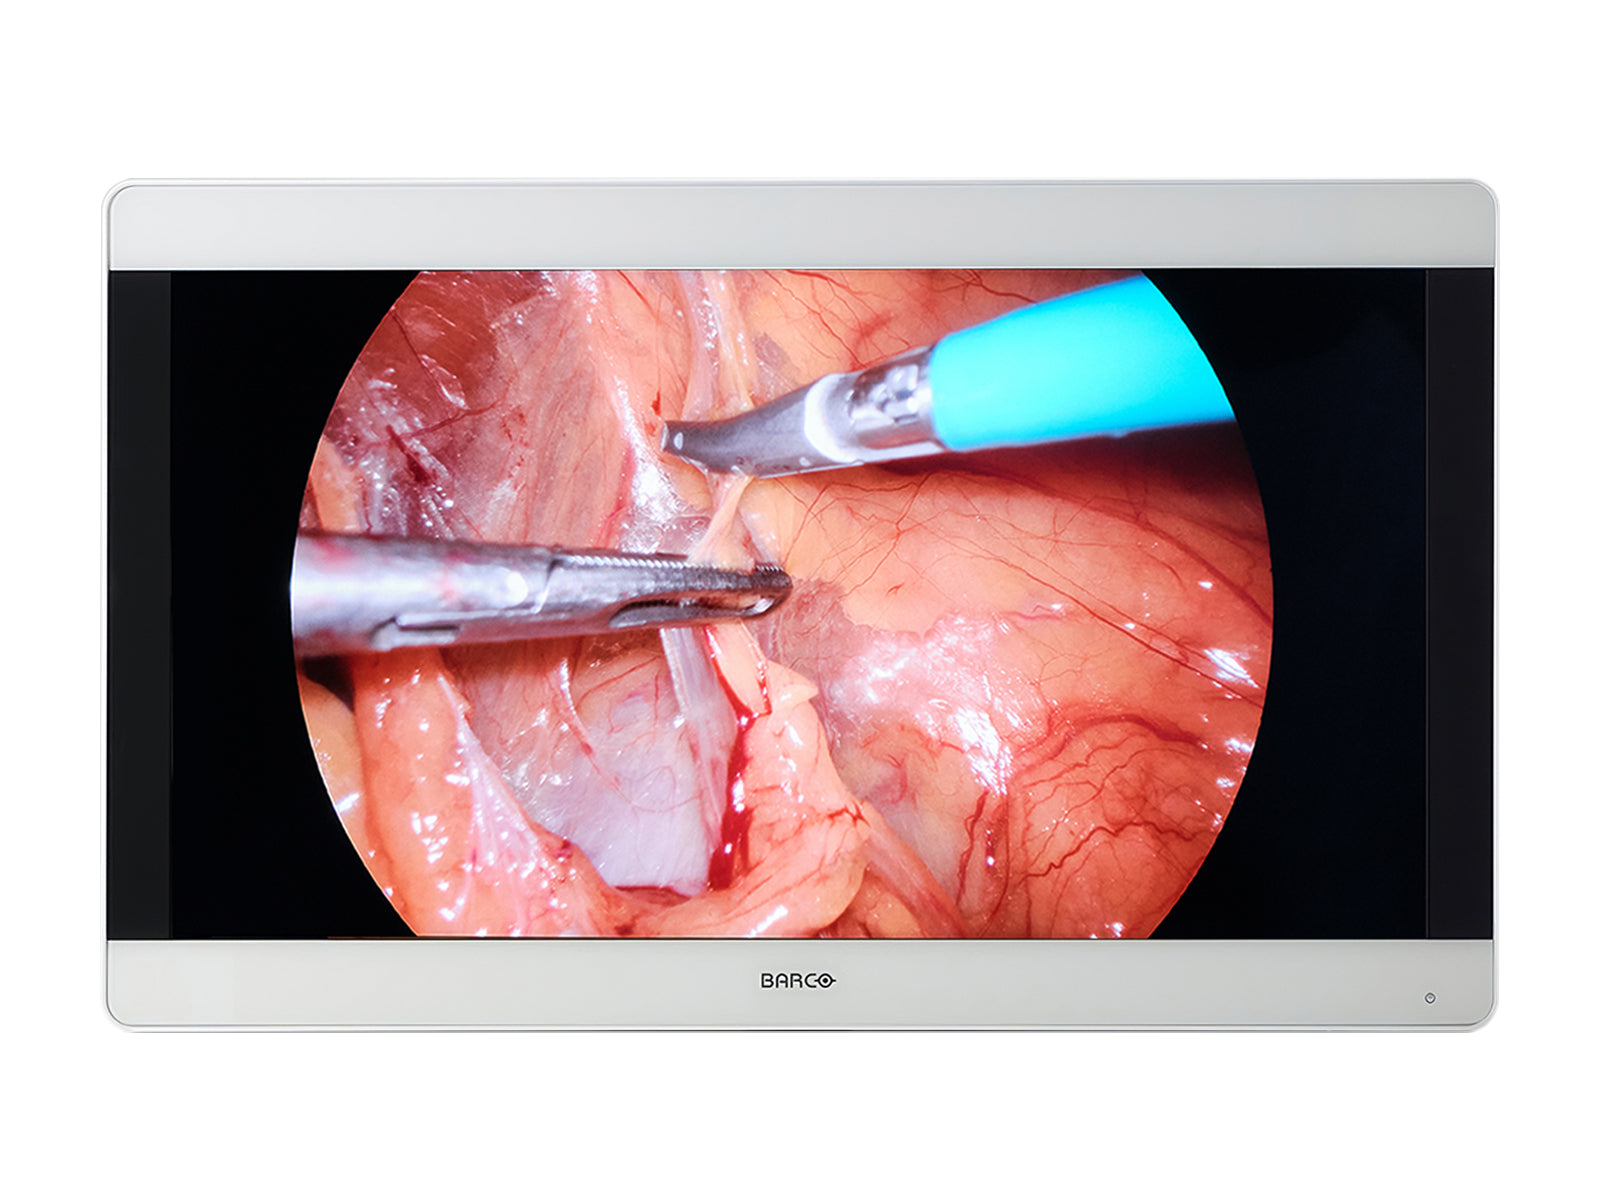 Barco MDSC-8232 31" LED 4K Color Surgical Medical Display Monitor (K9307922)